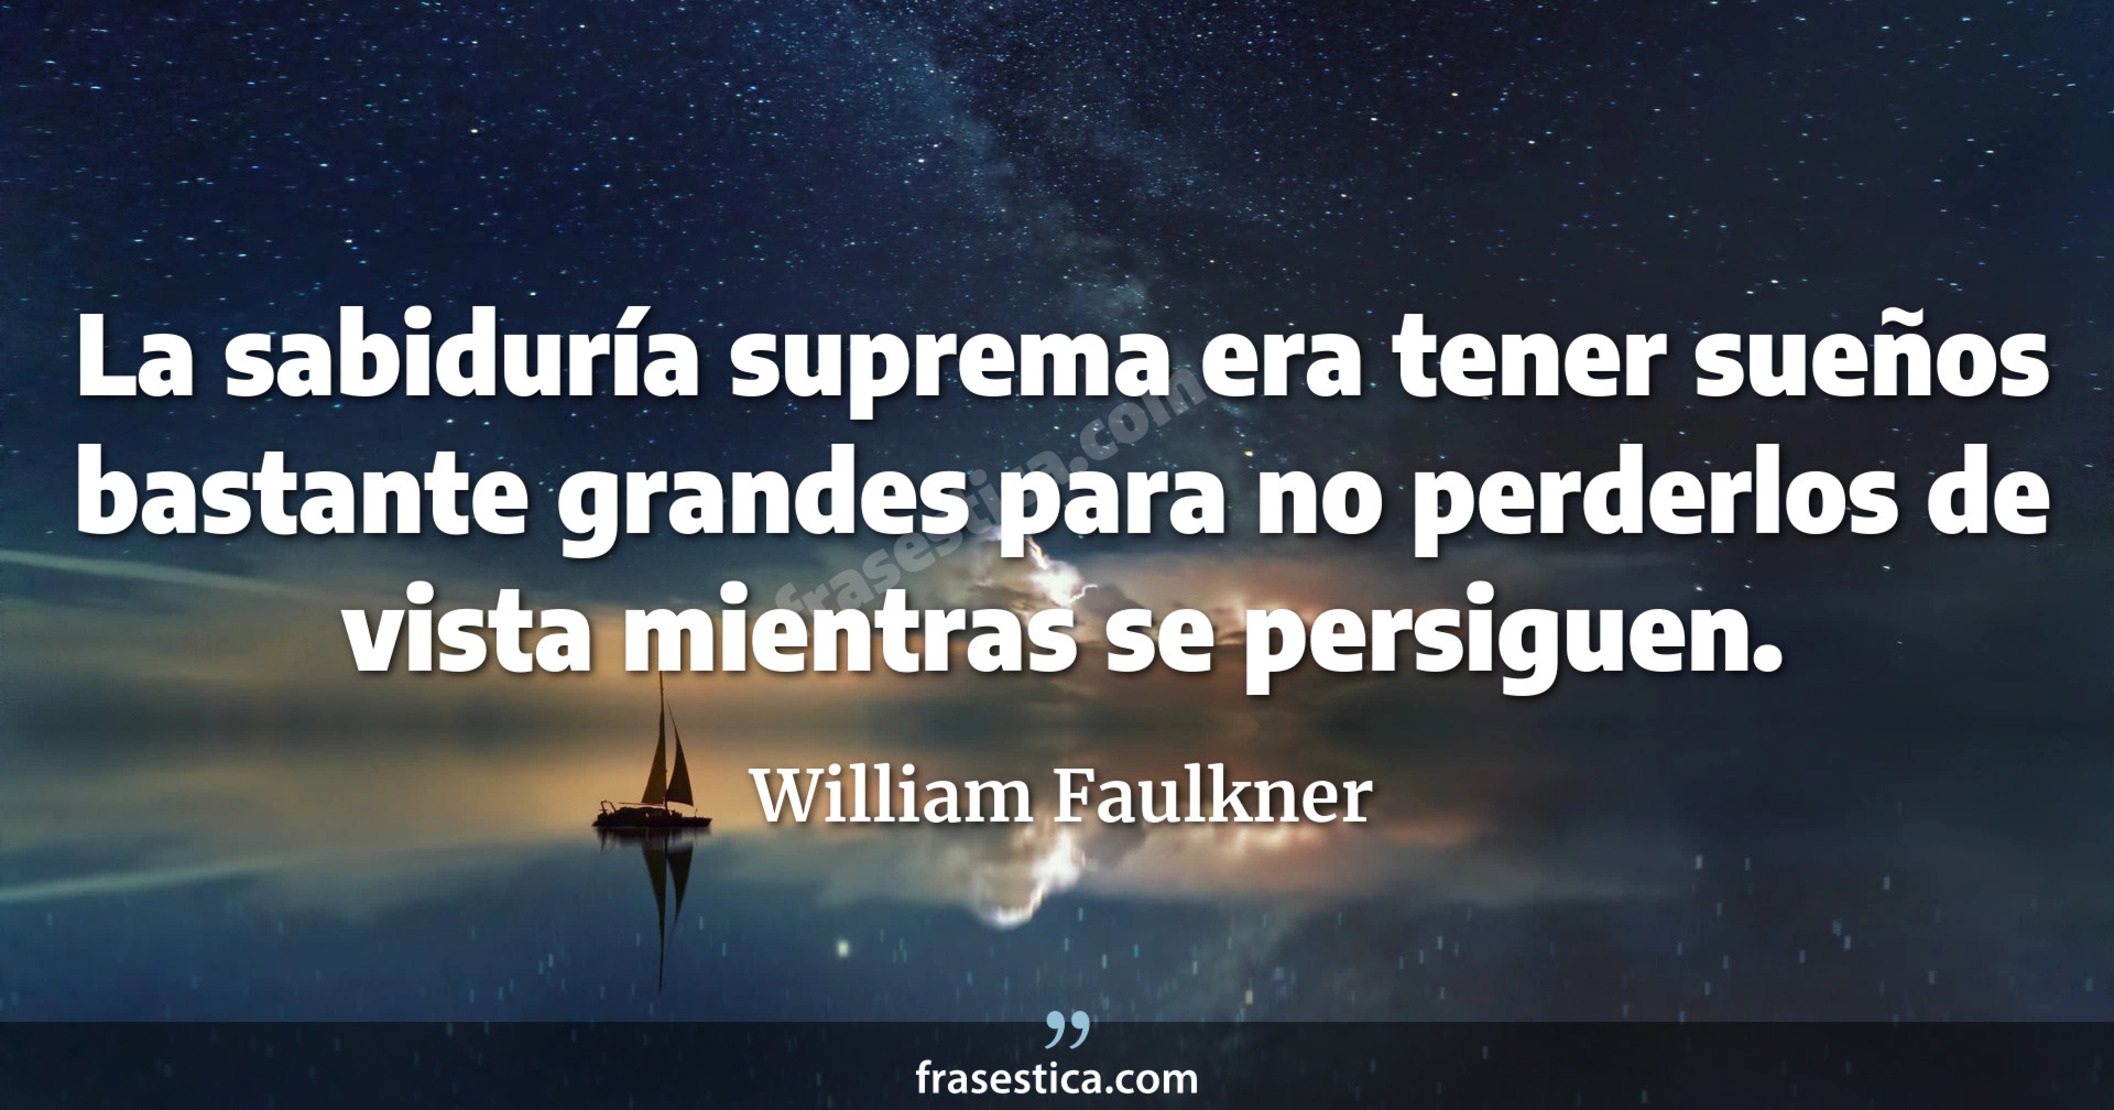 La sabiduría suprema era tener sueños bastante grandes para no perderlos de vista mientras se persiguen. - William Faulkner